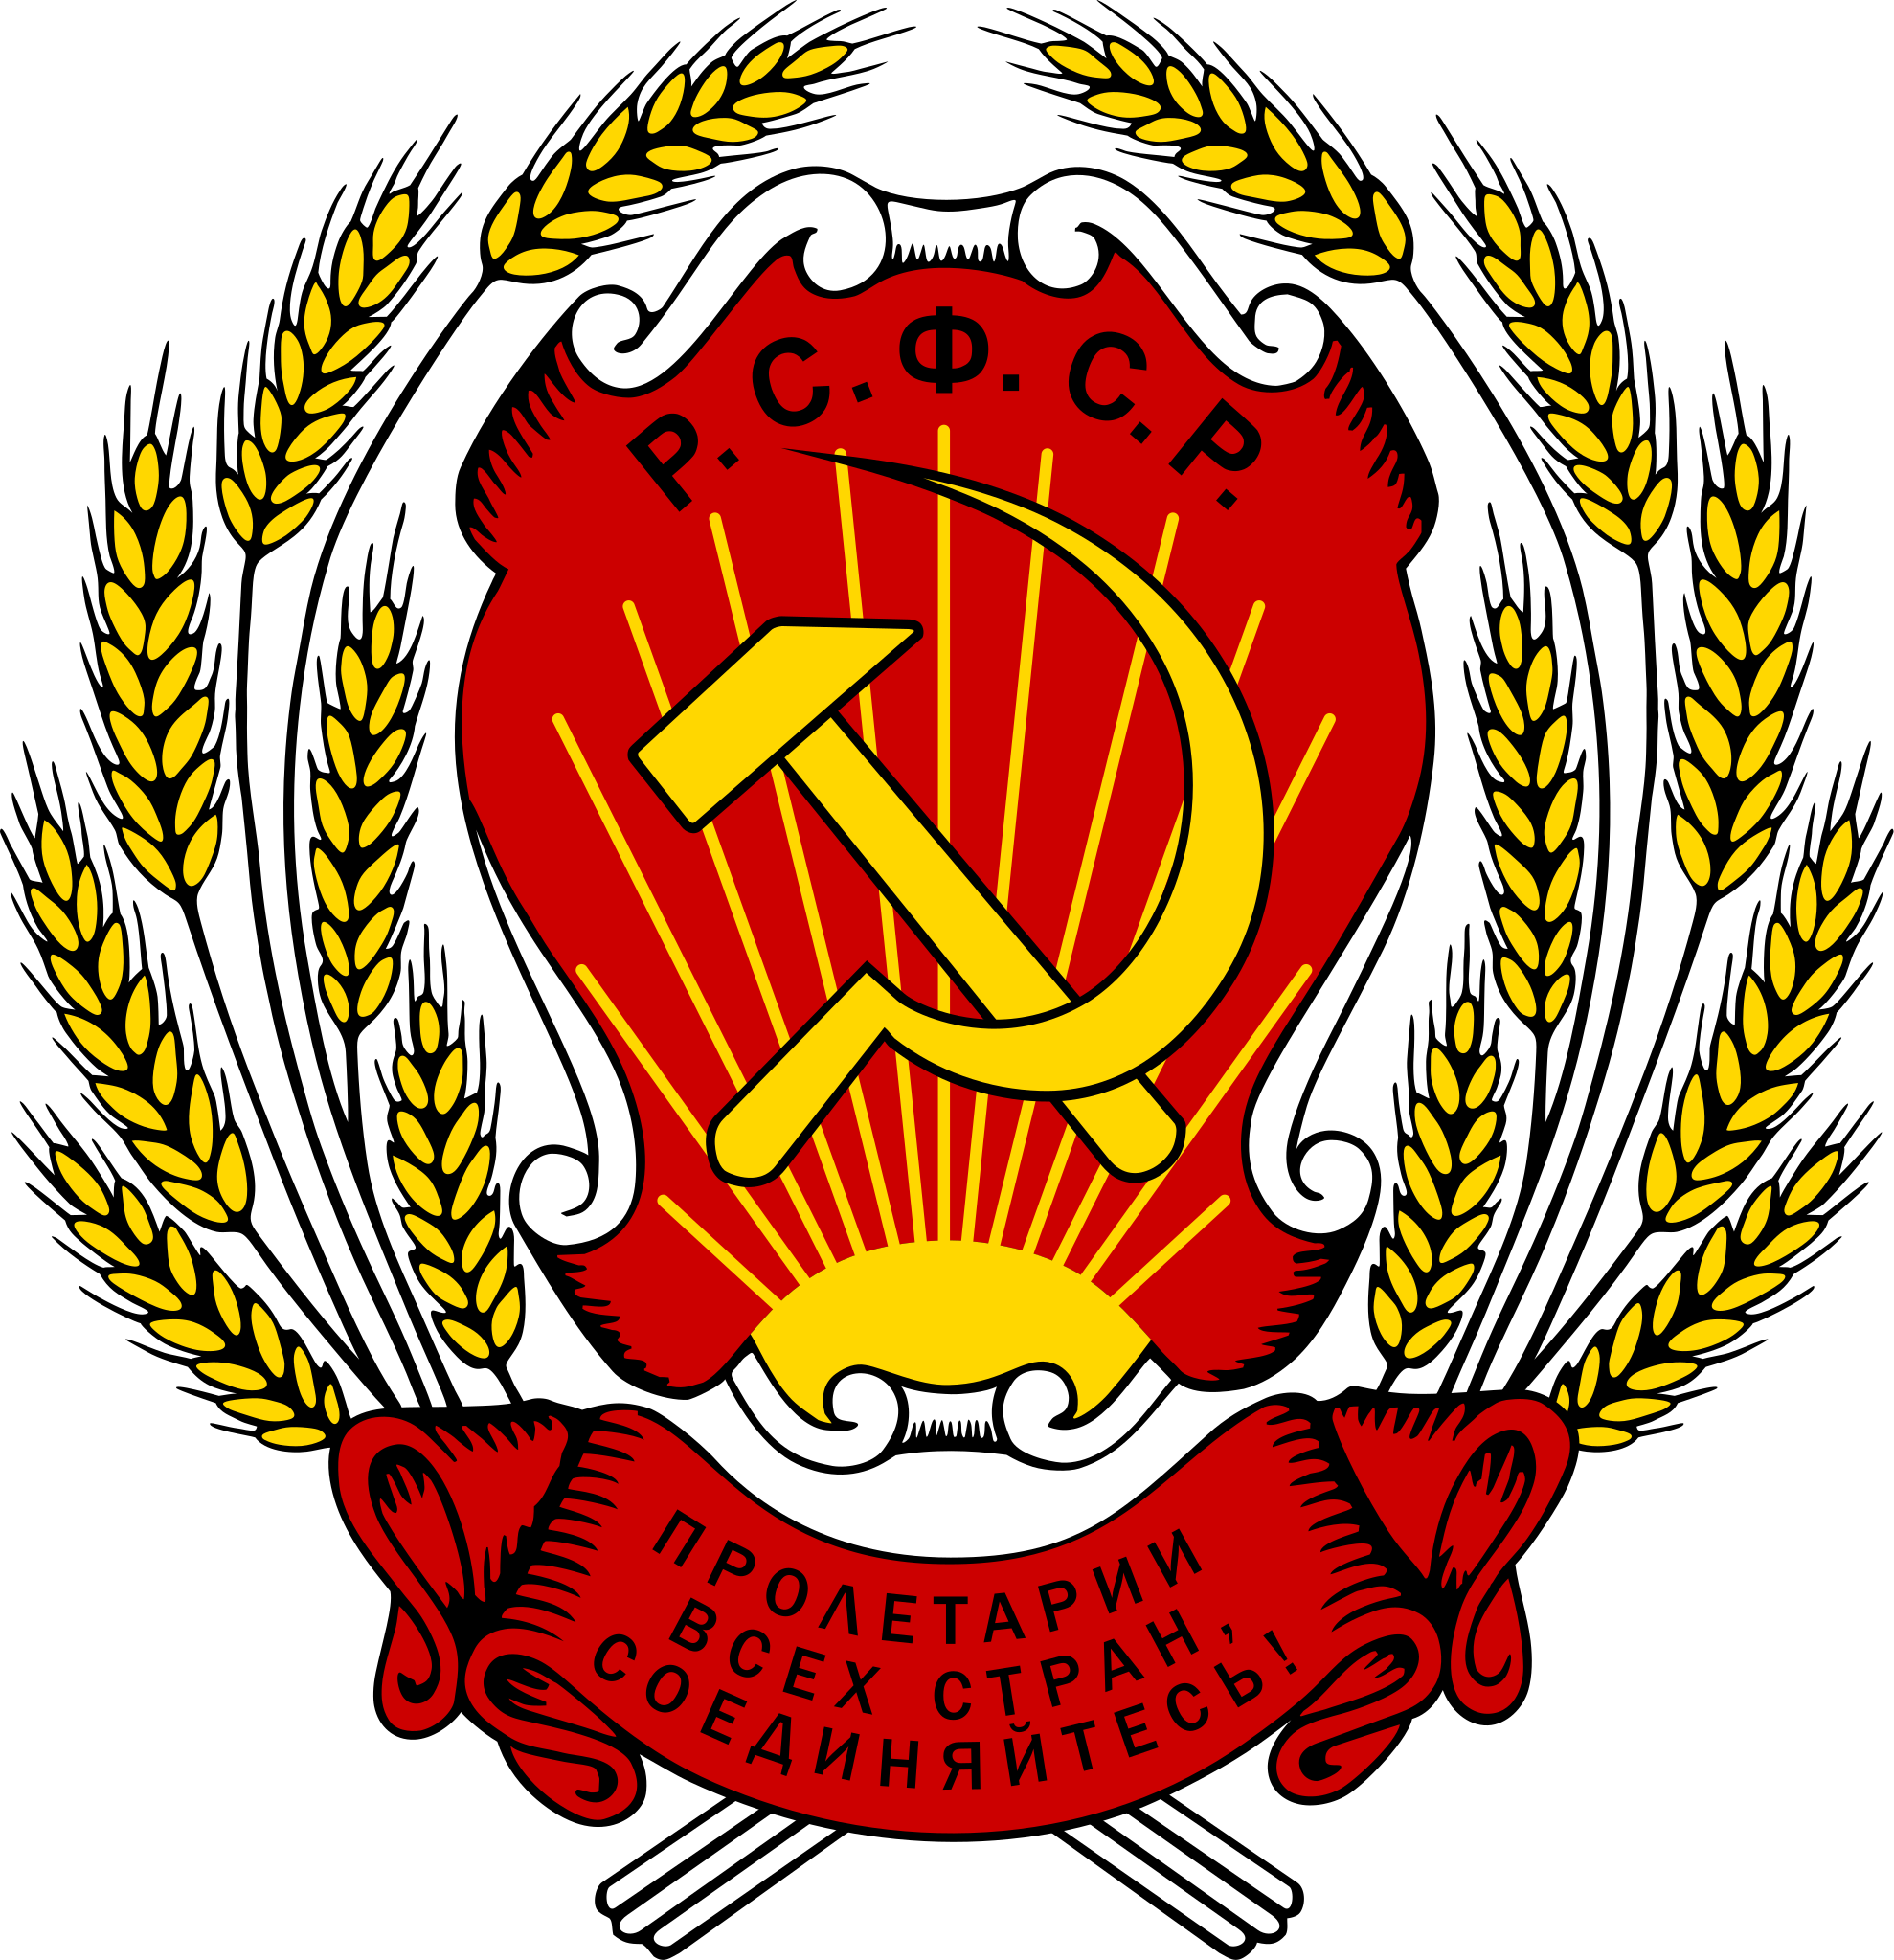 俄罗斯国徽(1918年